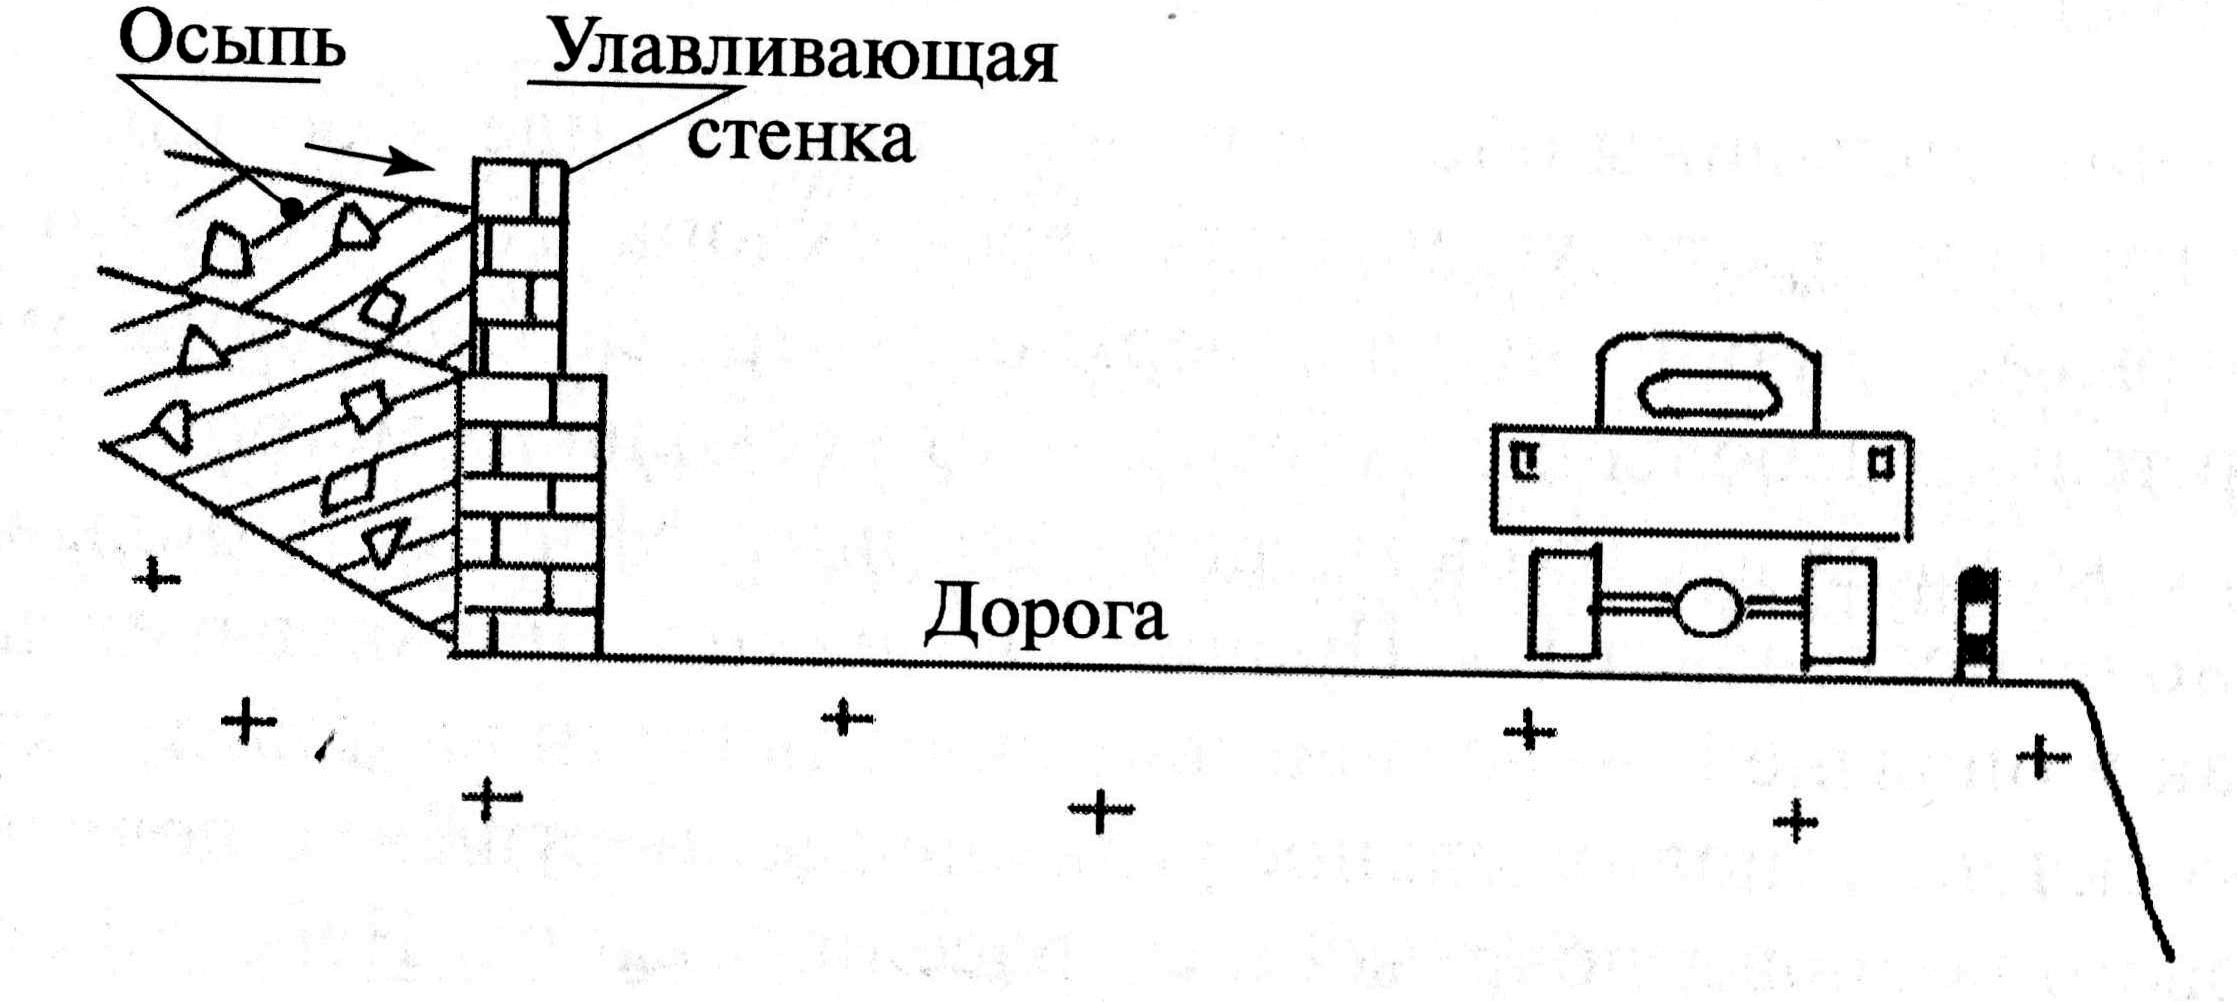 Определение крена фундамента и горизонтального смещения верха опоры